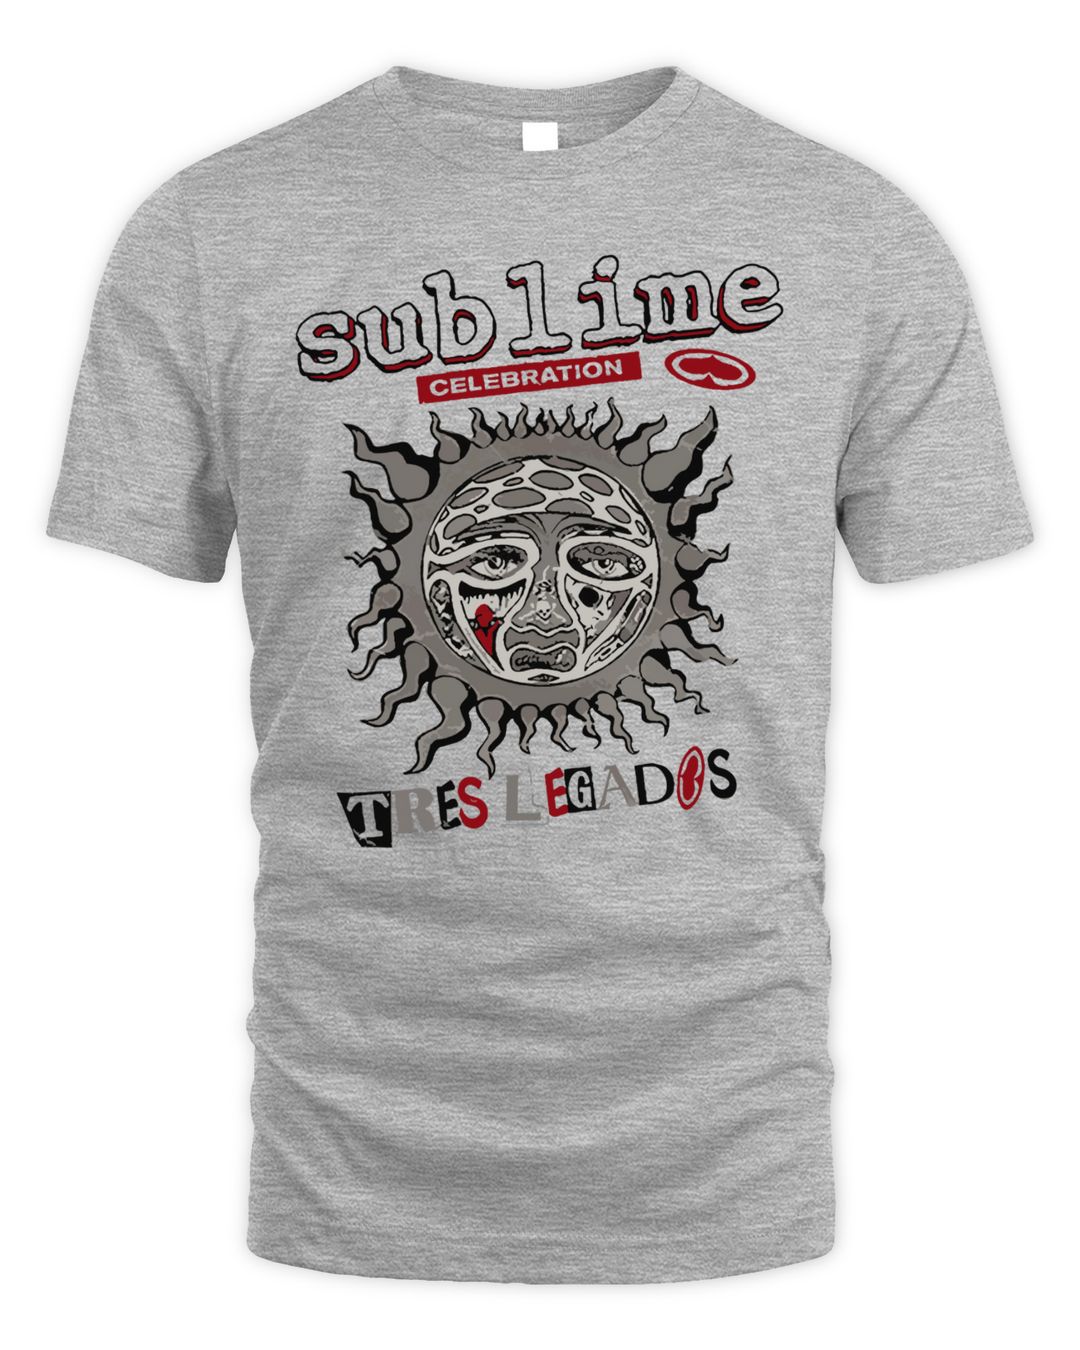 Sublime Merch Tres Legados Show Shirt